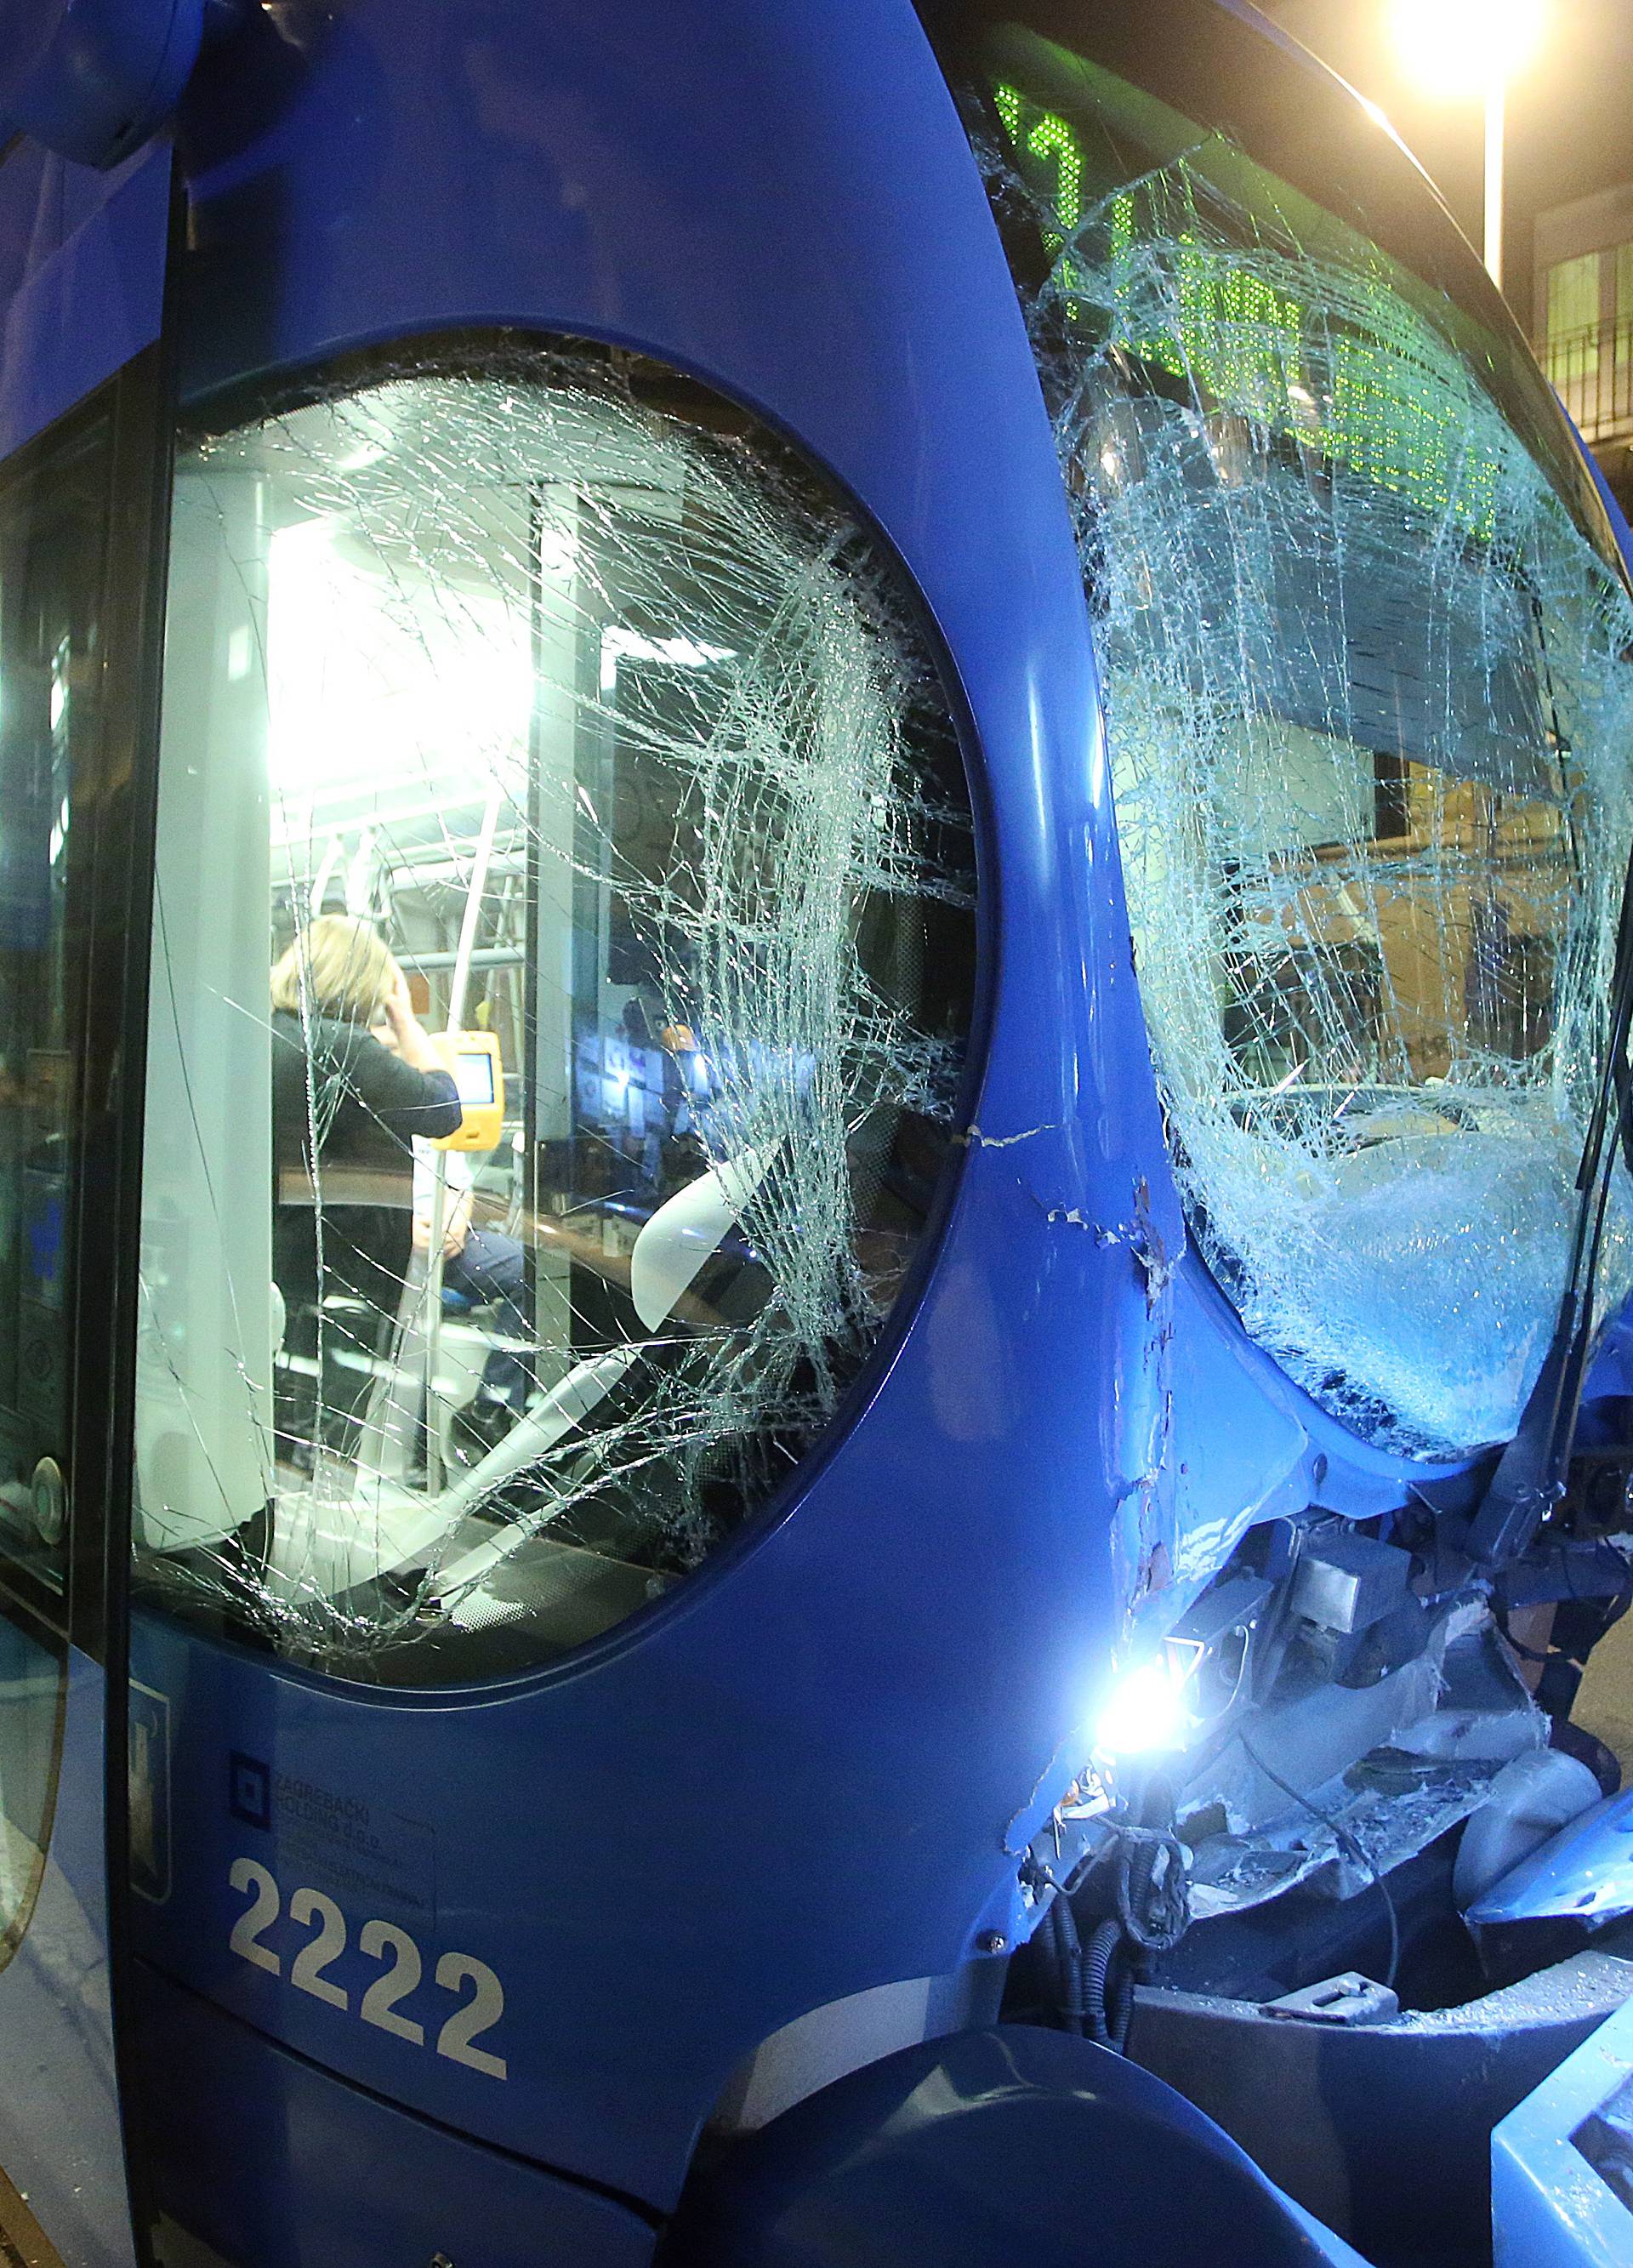 Sudarili se dva tramvaja i auto u Zagrebu: Ima ozlijeđenih ljudi